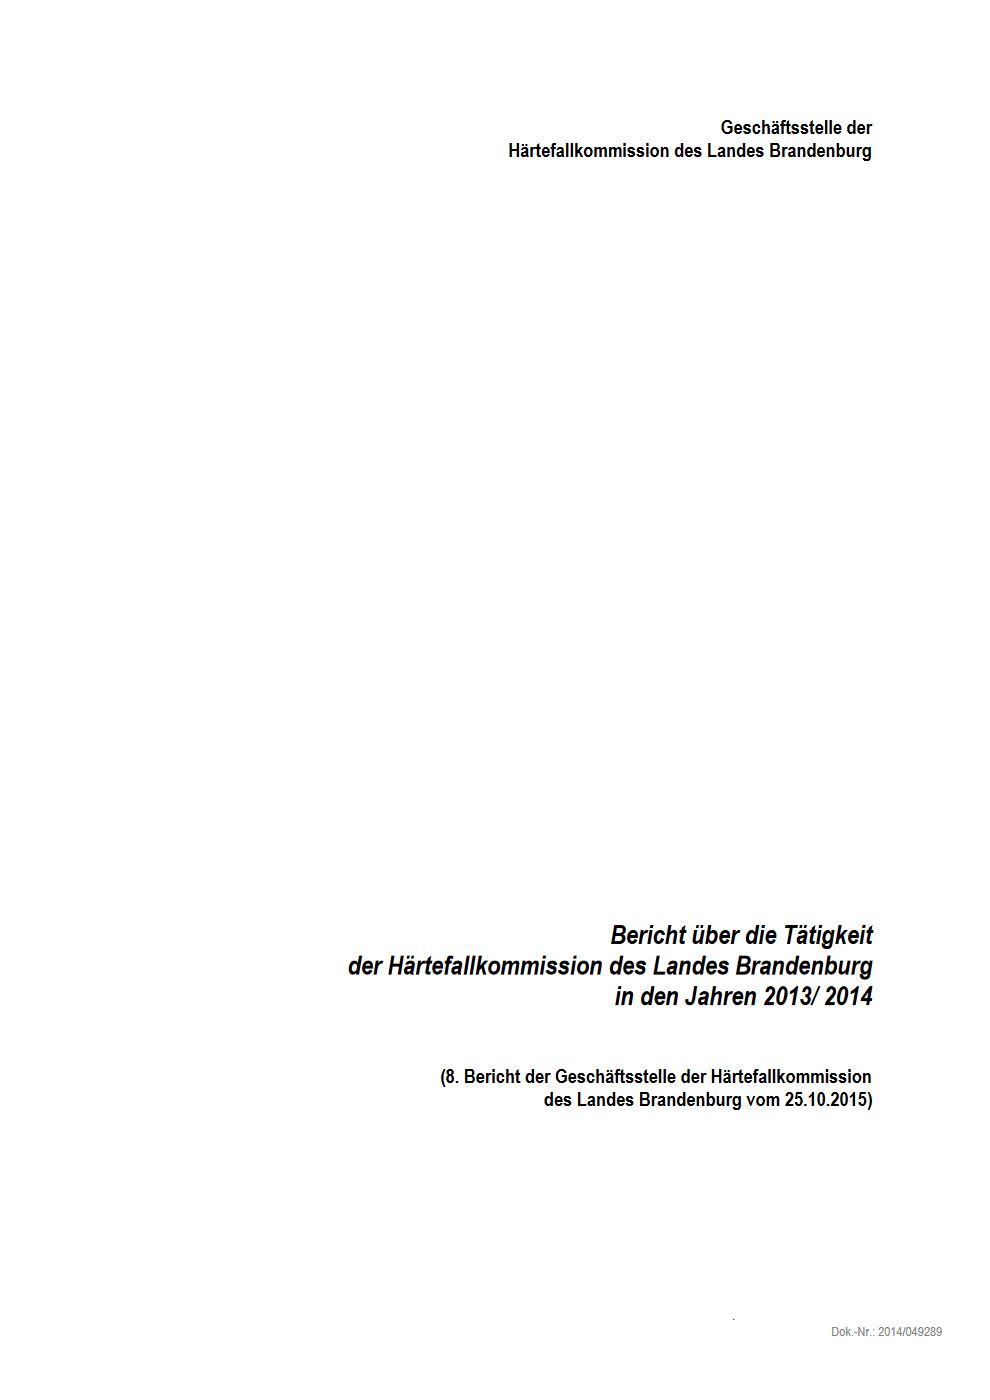 Bild vergrößern (Bild: Härtefallkommission Tätigkeitsbericht 2013/2014)